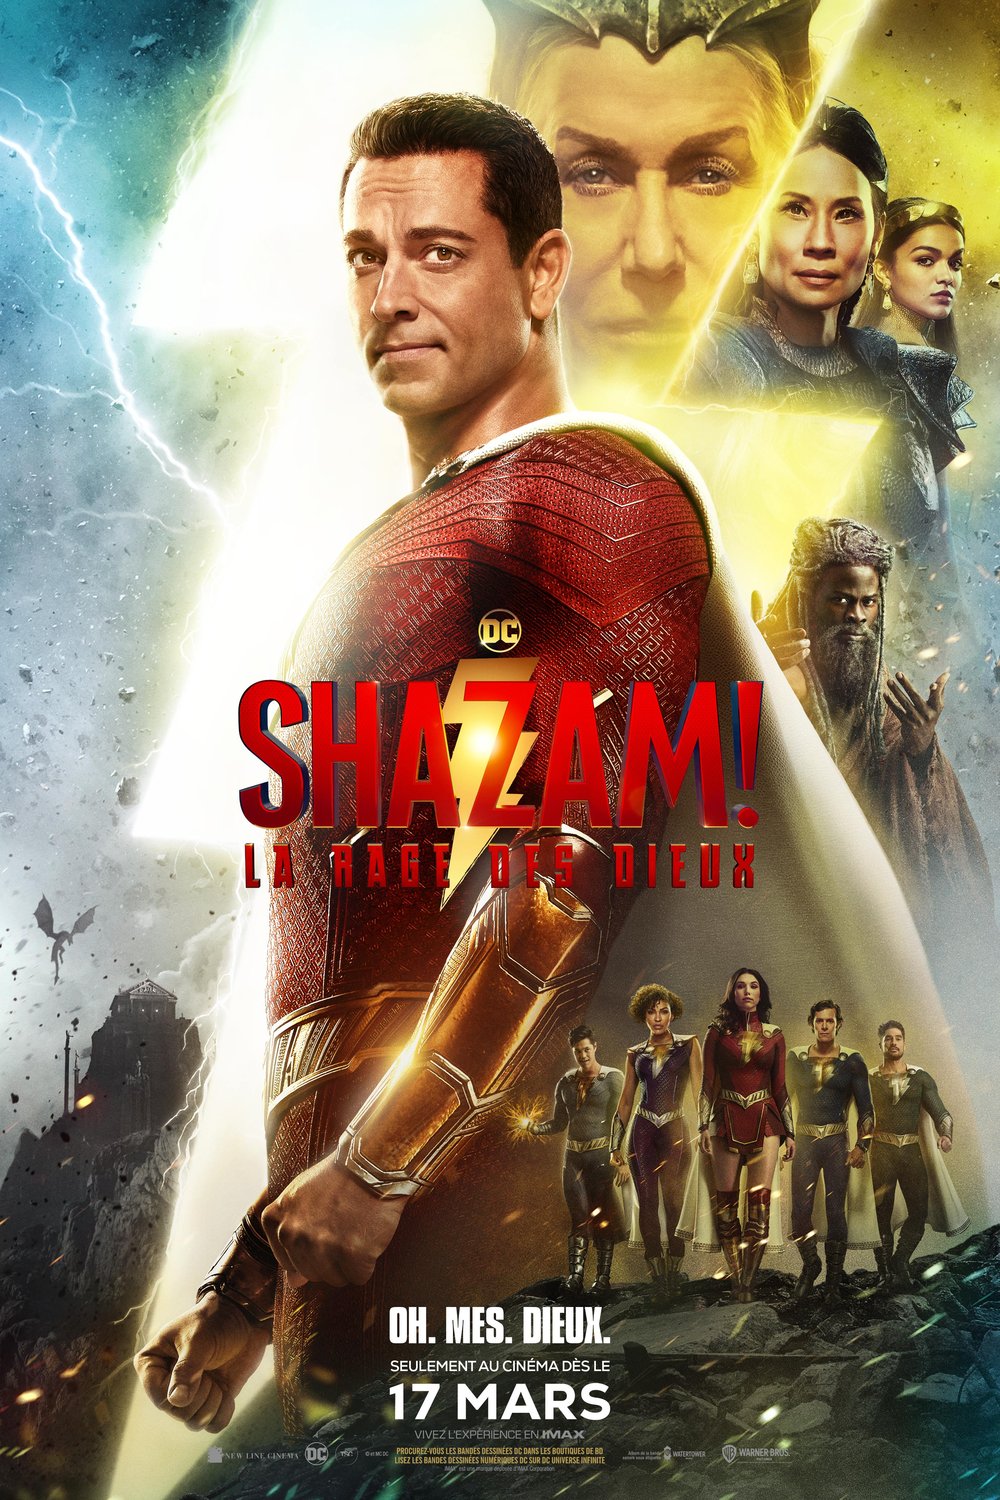 L'affiche du film Shazam! La rage des dieux